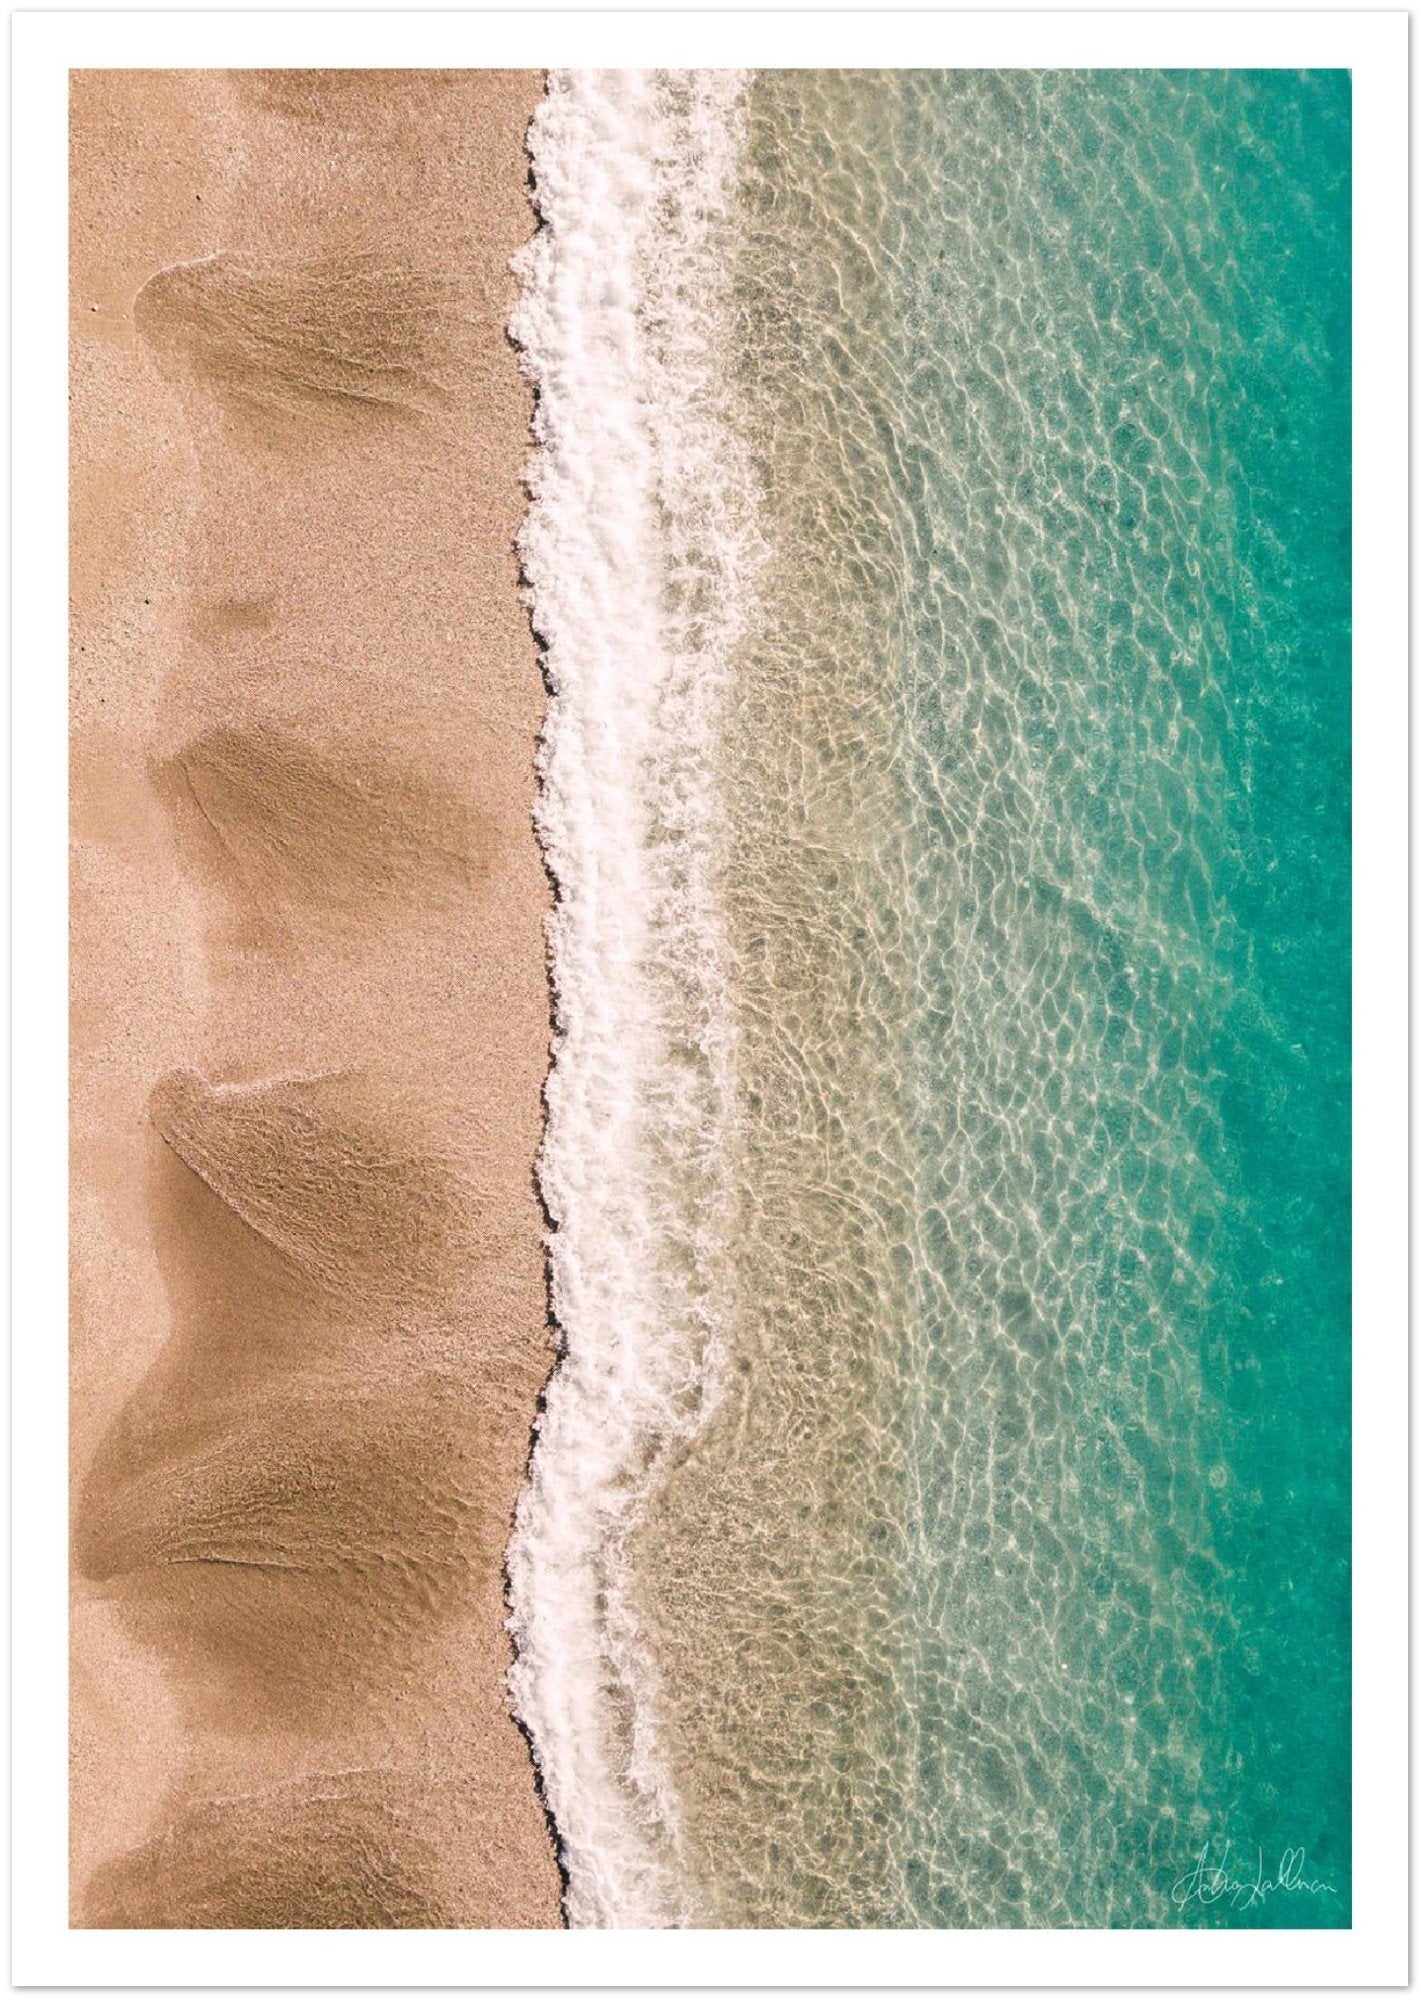 Amalfi Coast's Waves Premium Semi-Glossy Print